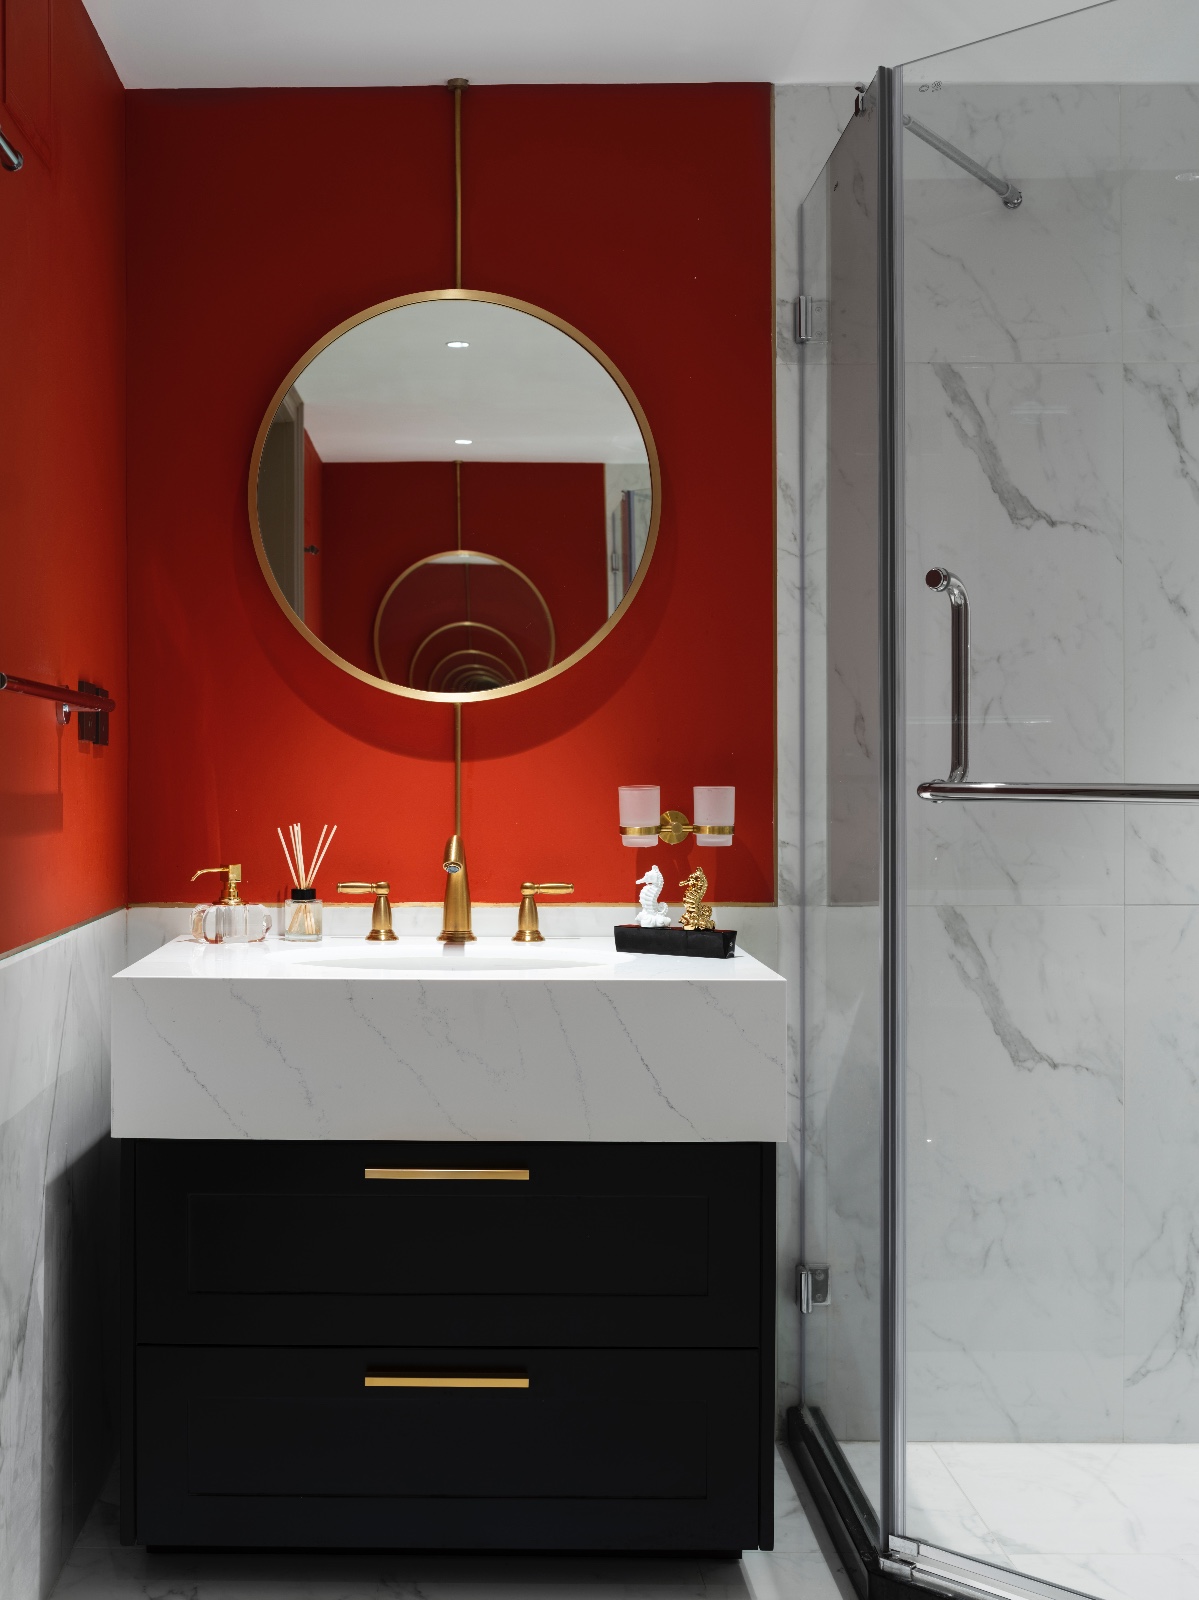 现代美式风格家装设计室内装修效果图-卫生间浴室柜